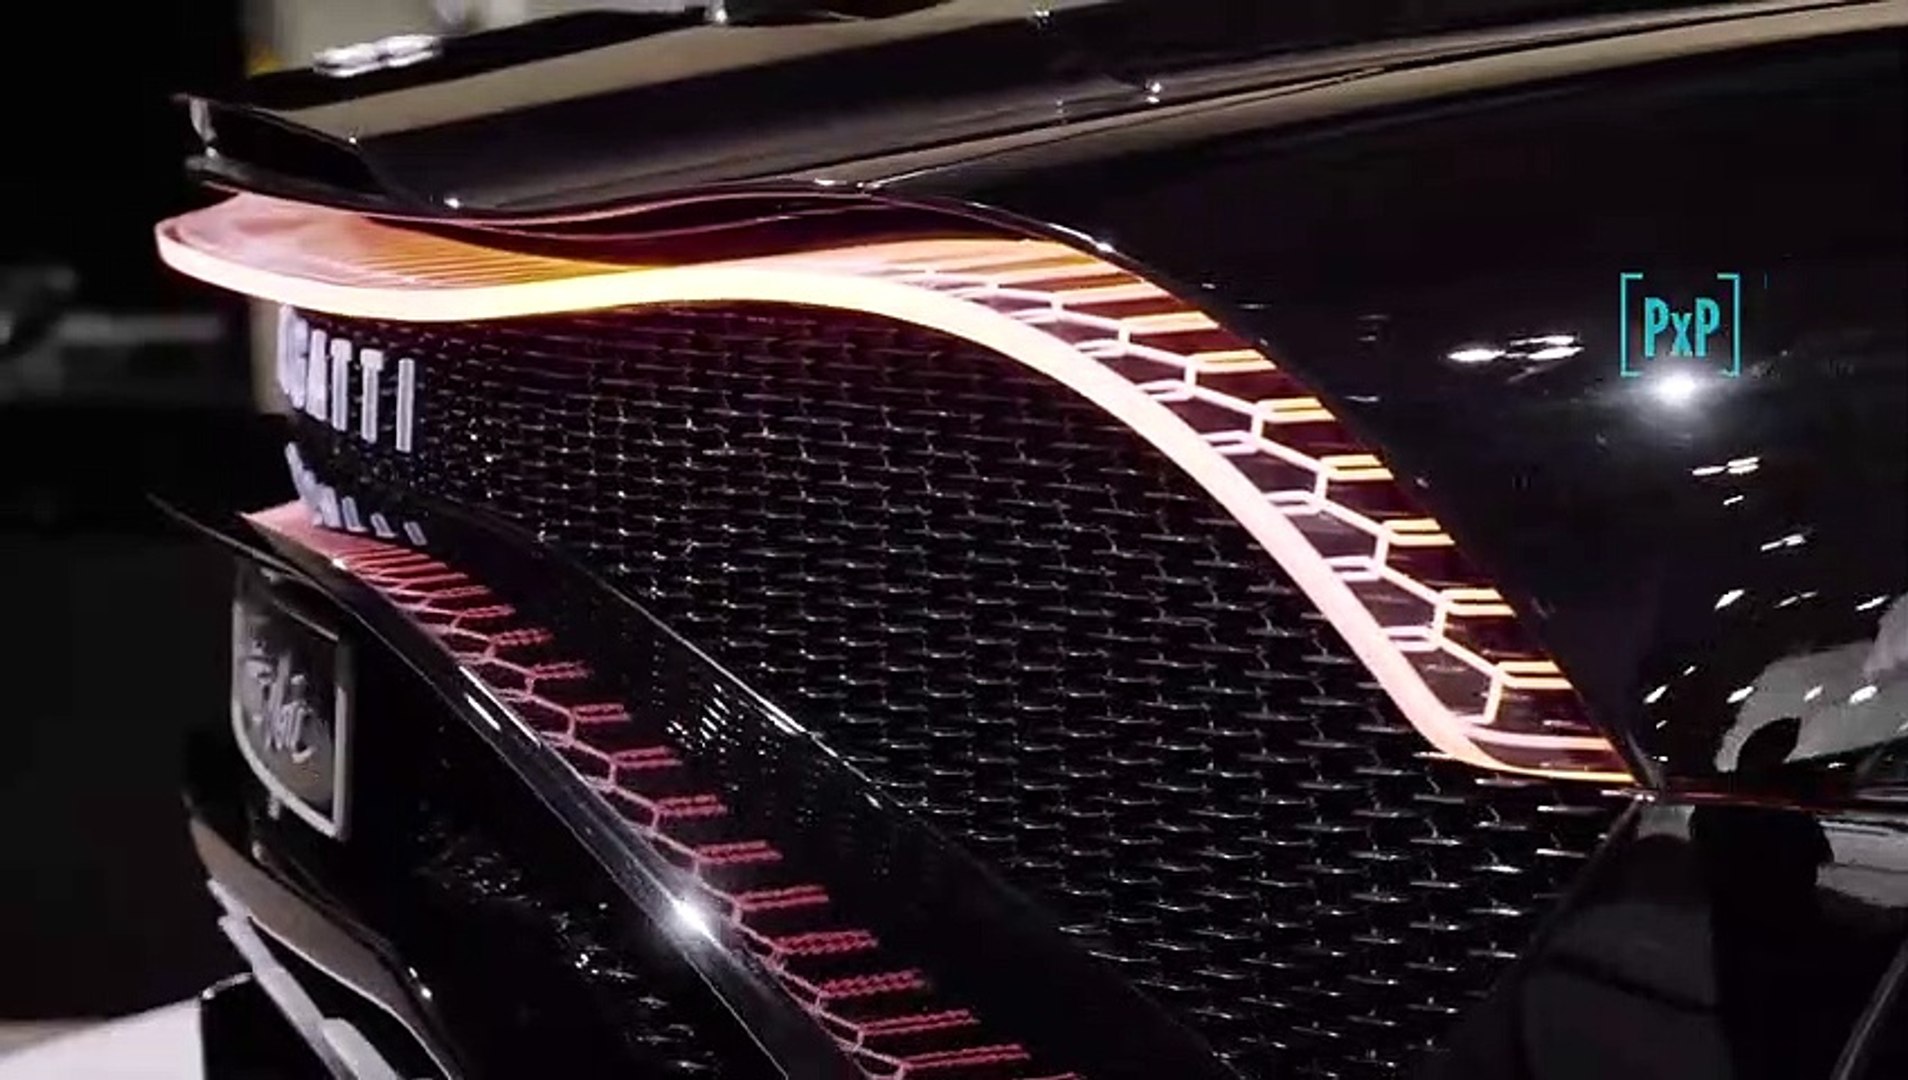 Bugatti La Voiture Noire, ou la voiture la plus chère au monde